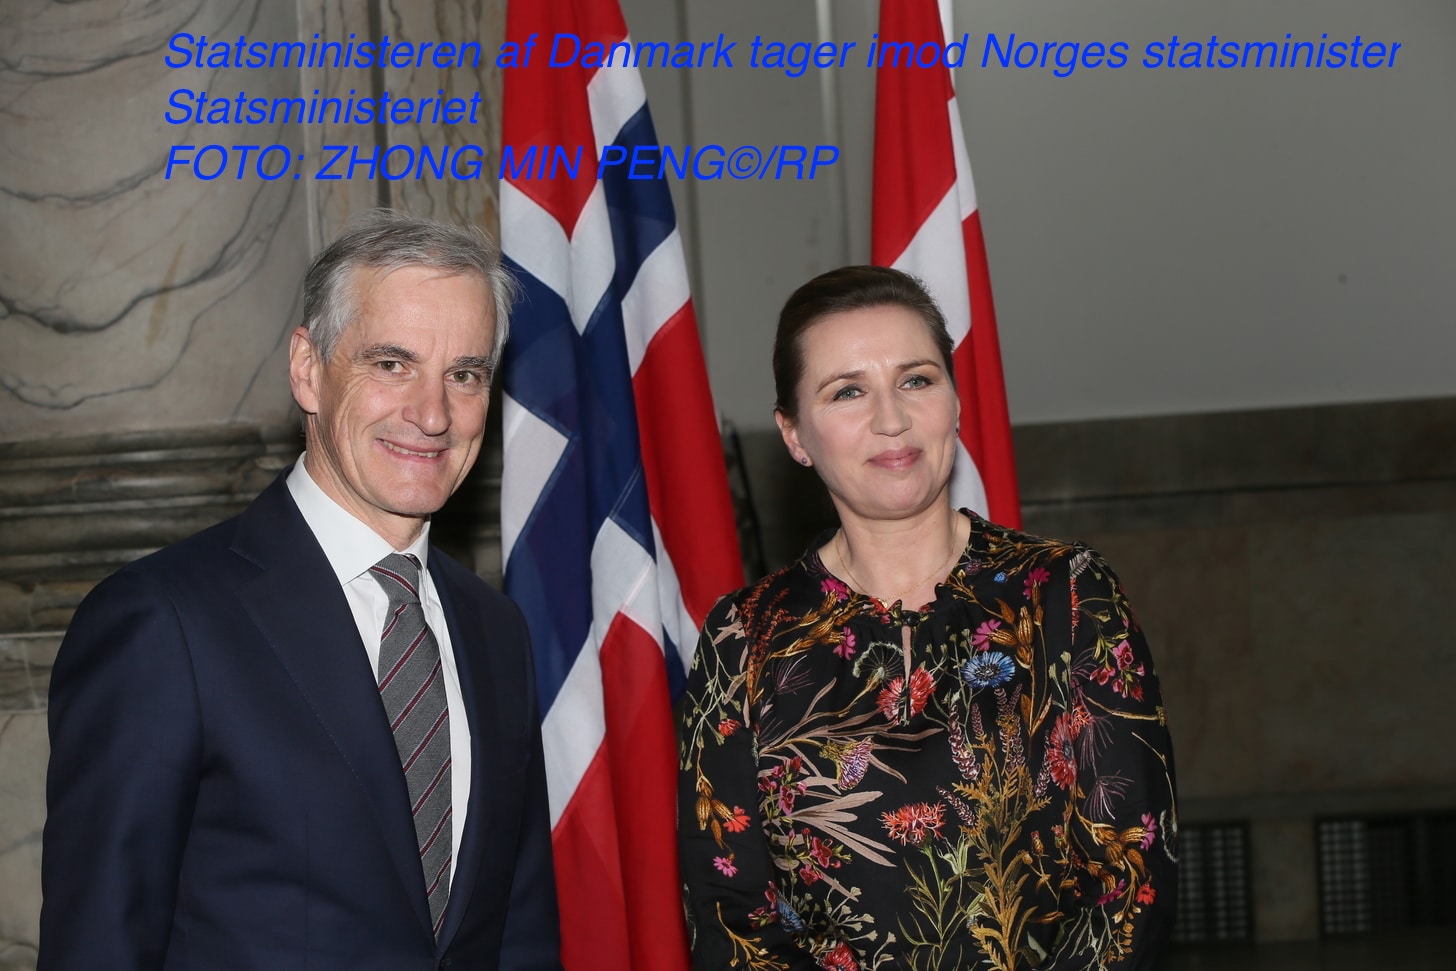 Statsministeren af Danmark tager imod Norges statsministerStatsministeriet